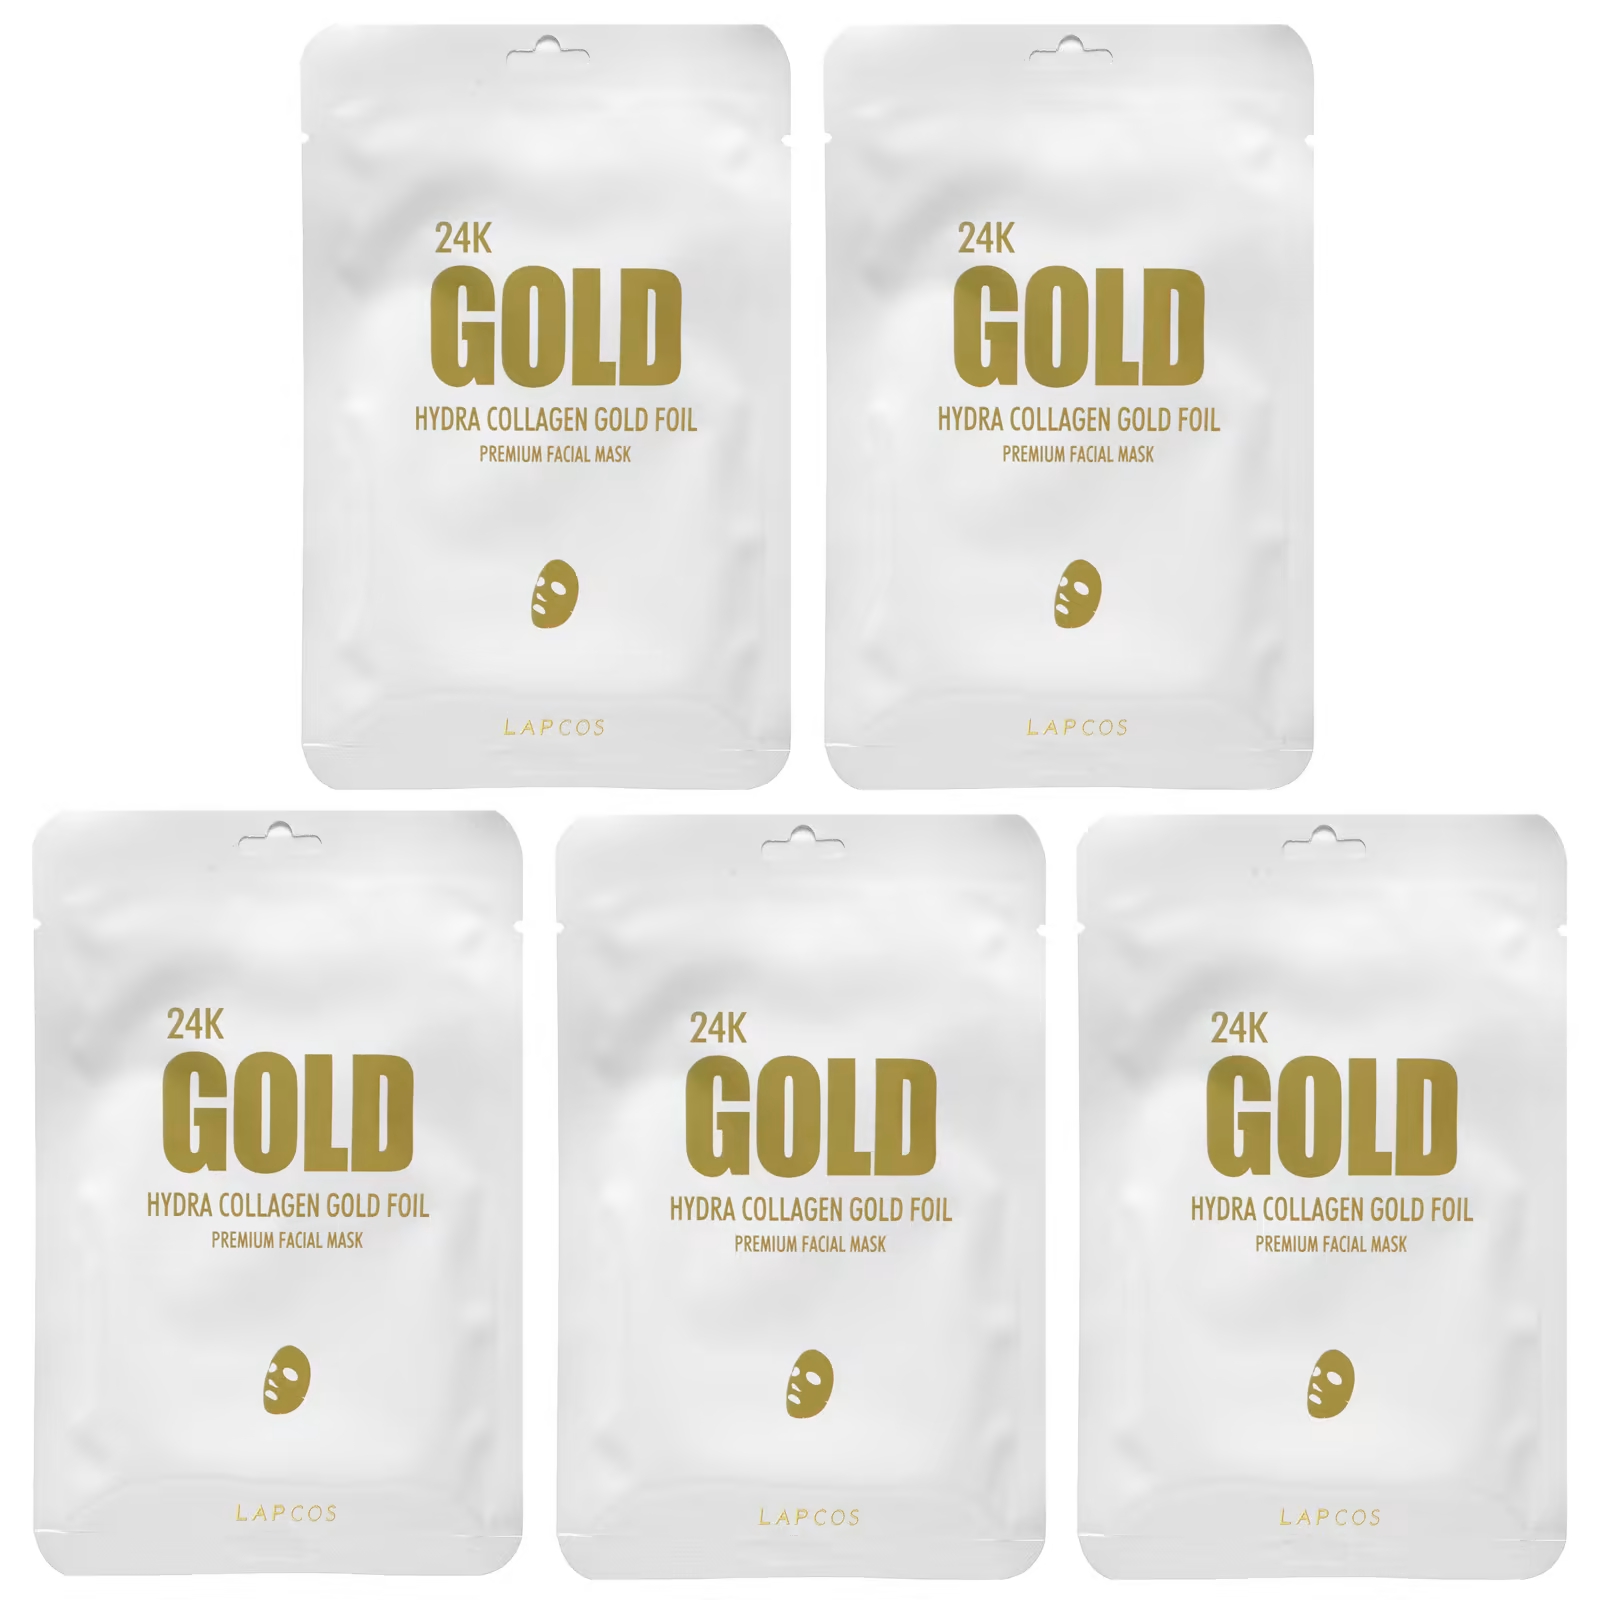 цена Lapcos 24K Gold Hydra Collagen Gold Foil косметическая маска для лица премиального качества 5 шт. 25 г (0,88 унции)